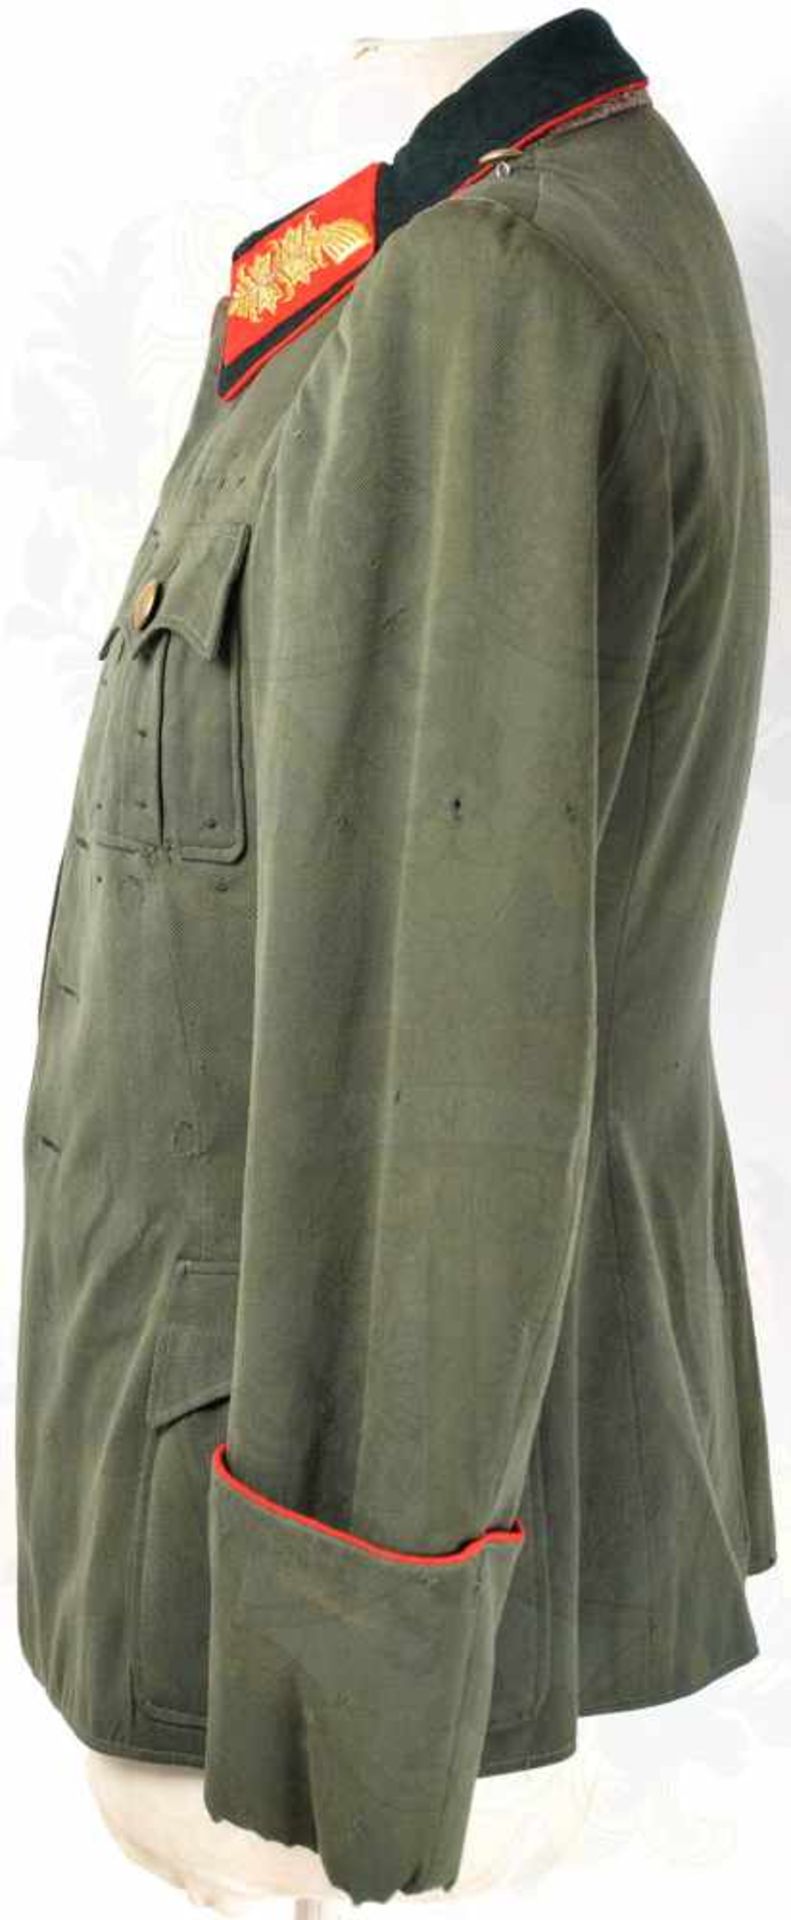 FELDBLUSE FÜR GENERALE, graugrünes Tuch m. 4 Taschen u. dunkelgrünem Kragen, rote Vorstöße, - Bild 5 aus 7